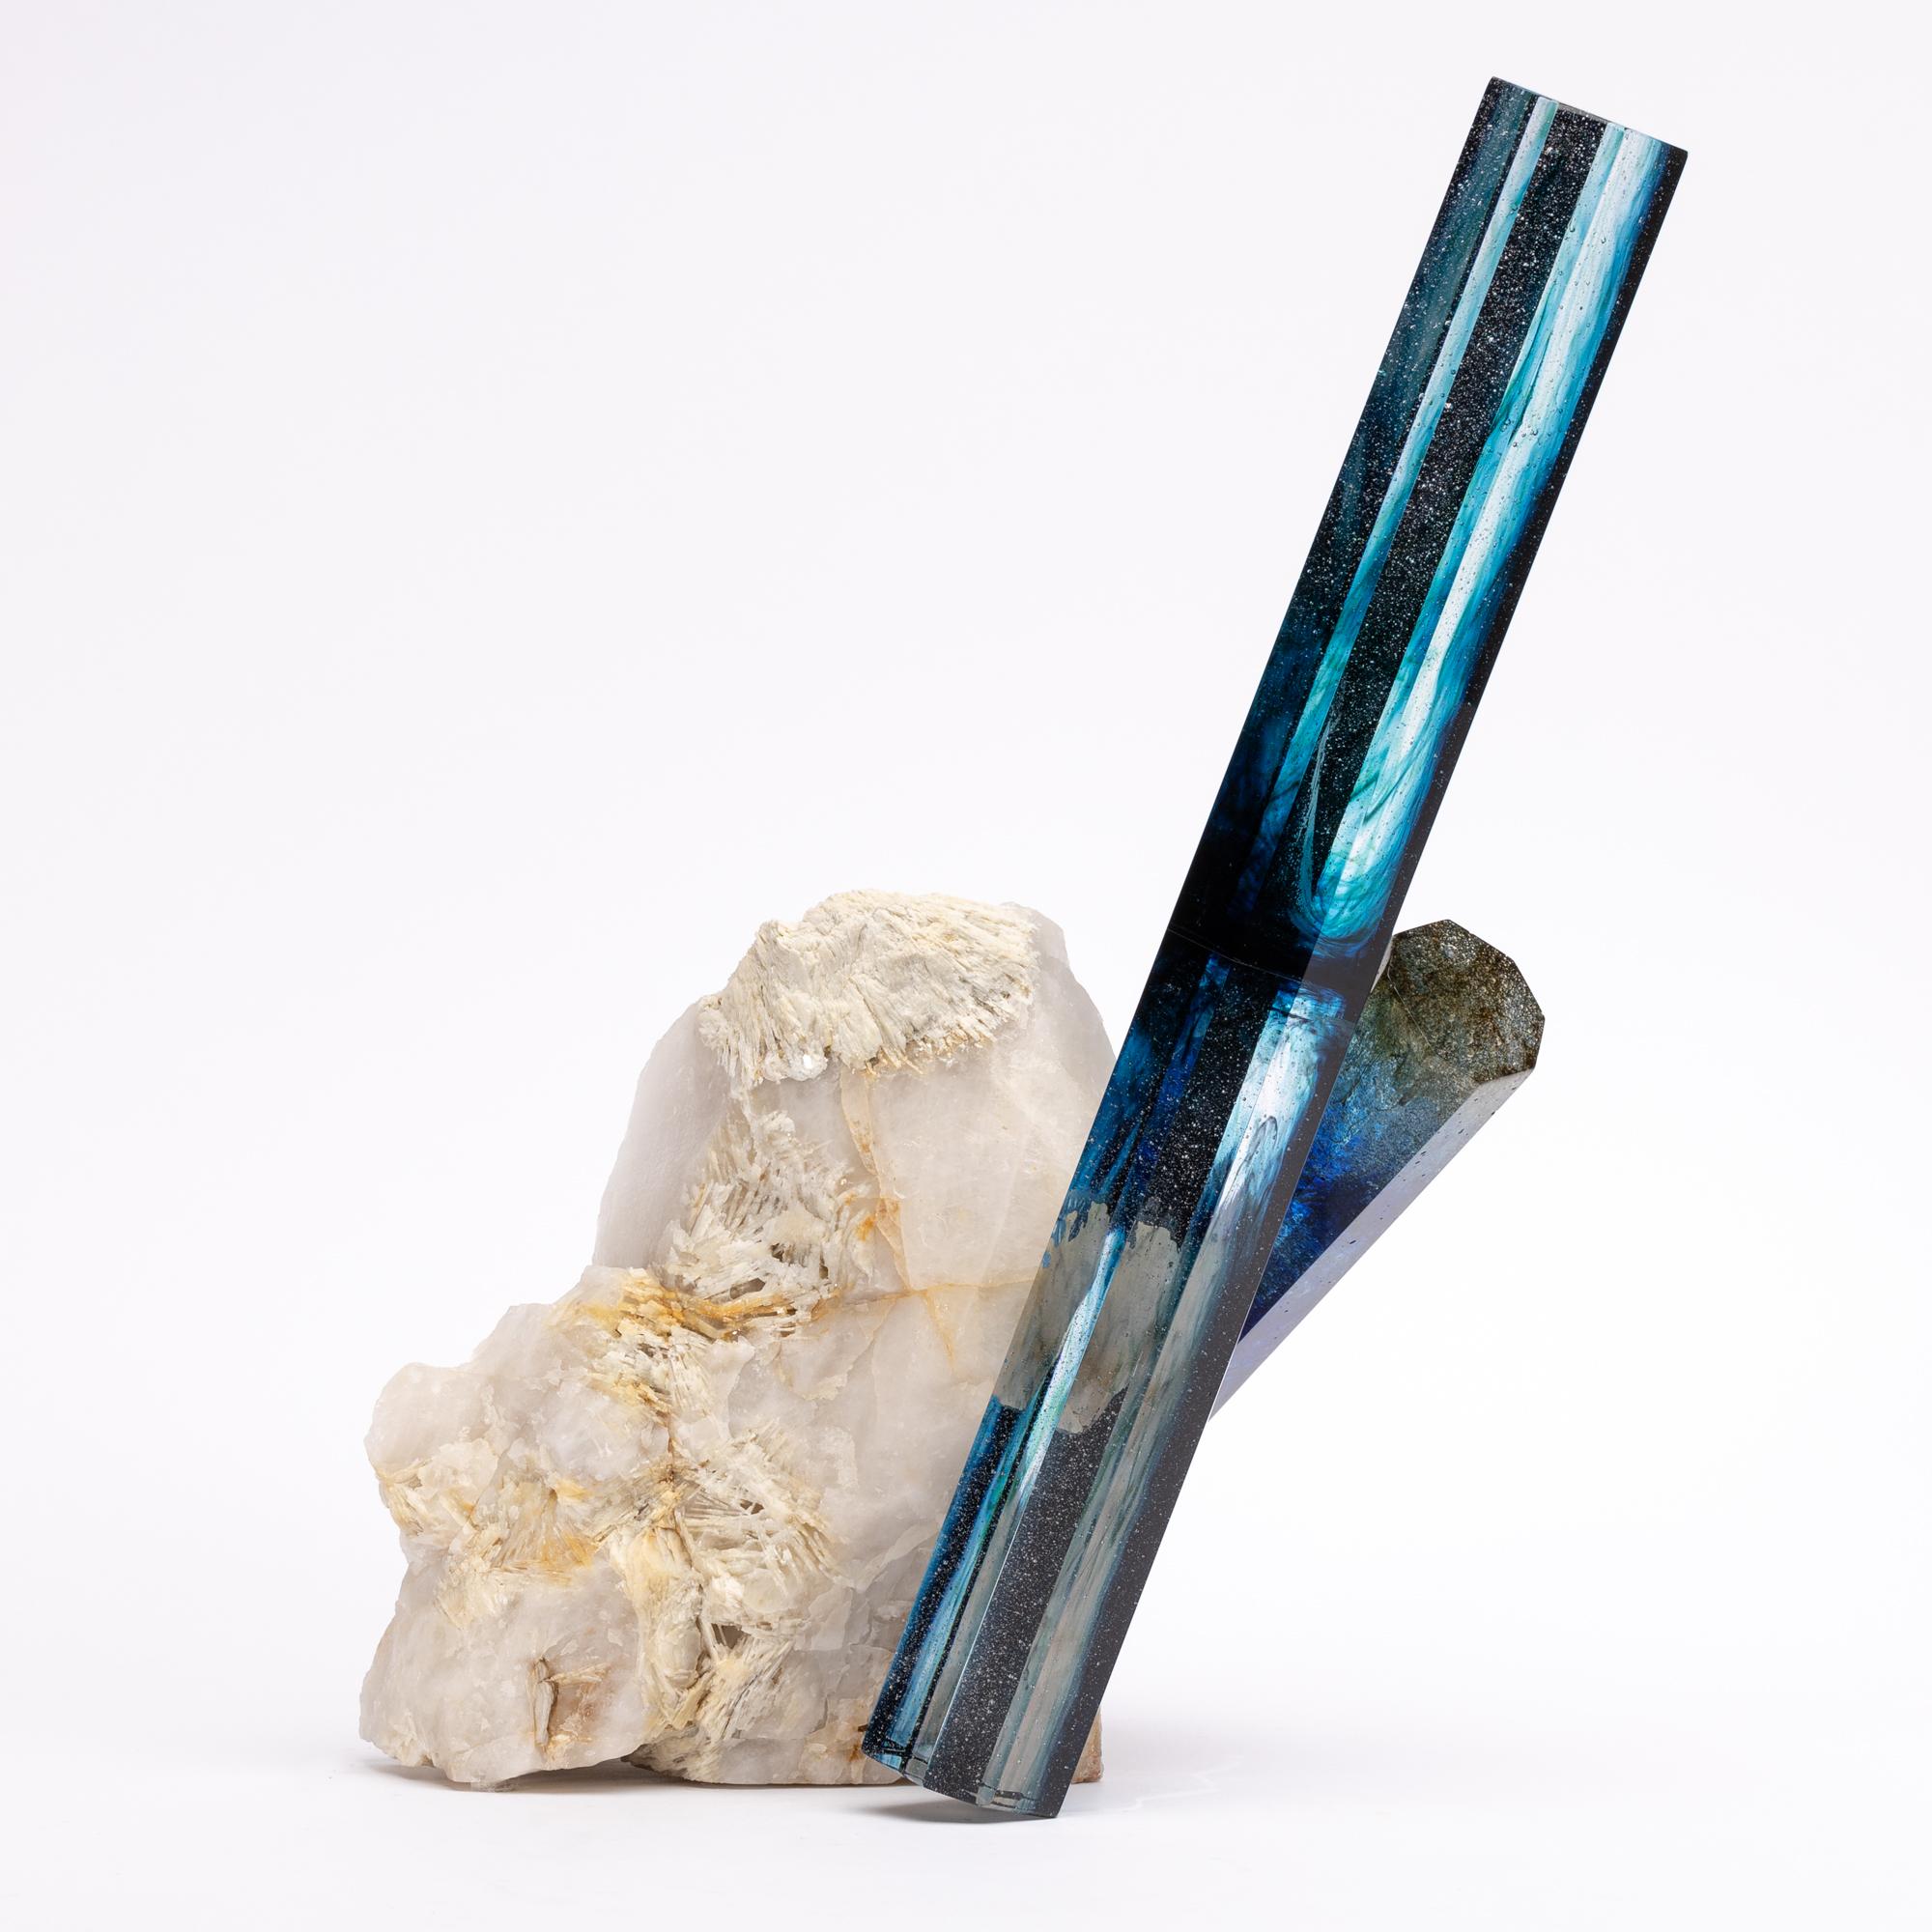 Organic Modern Tourmaline, Quartz and Glass Blue Shade Sculpture